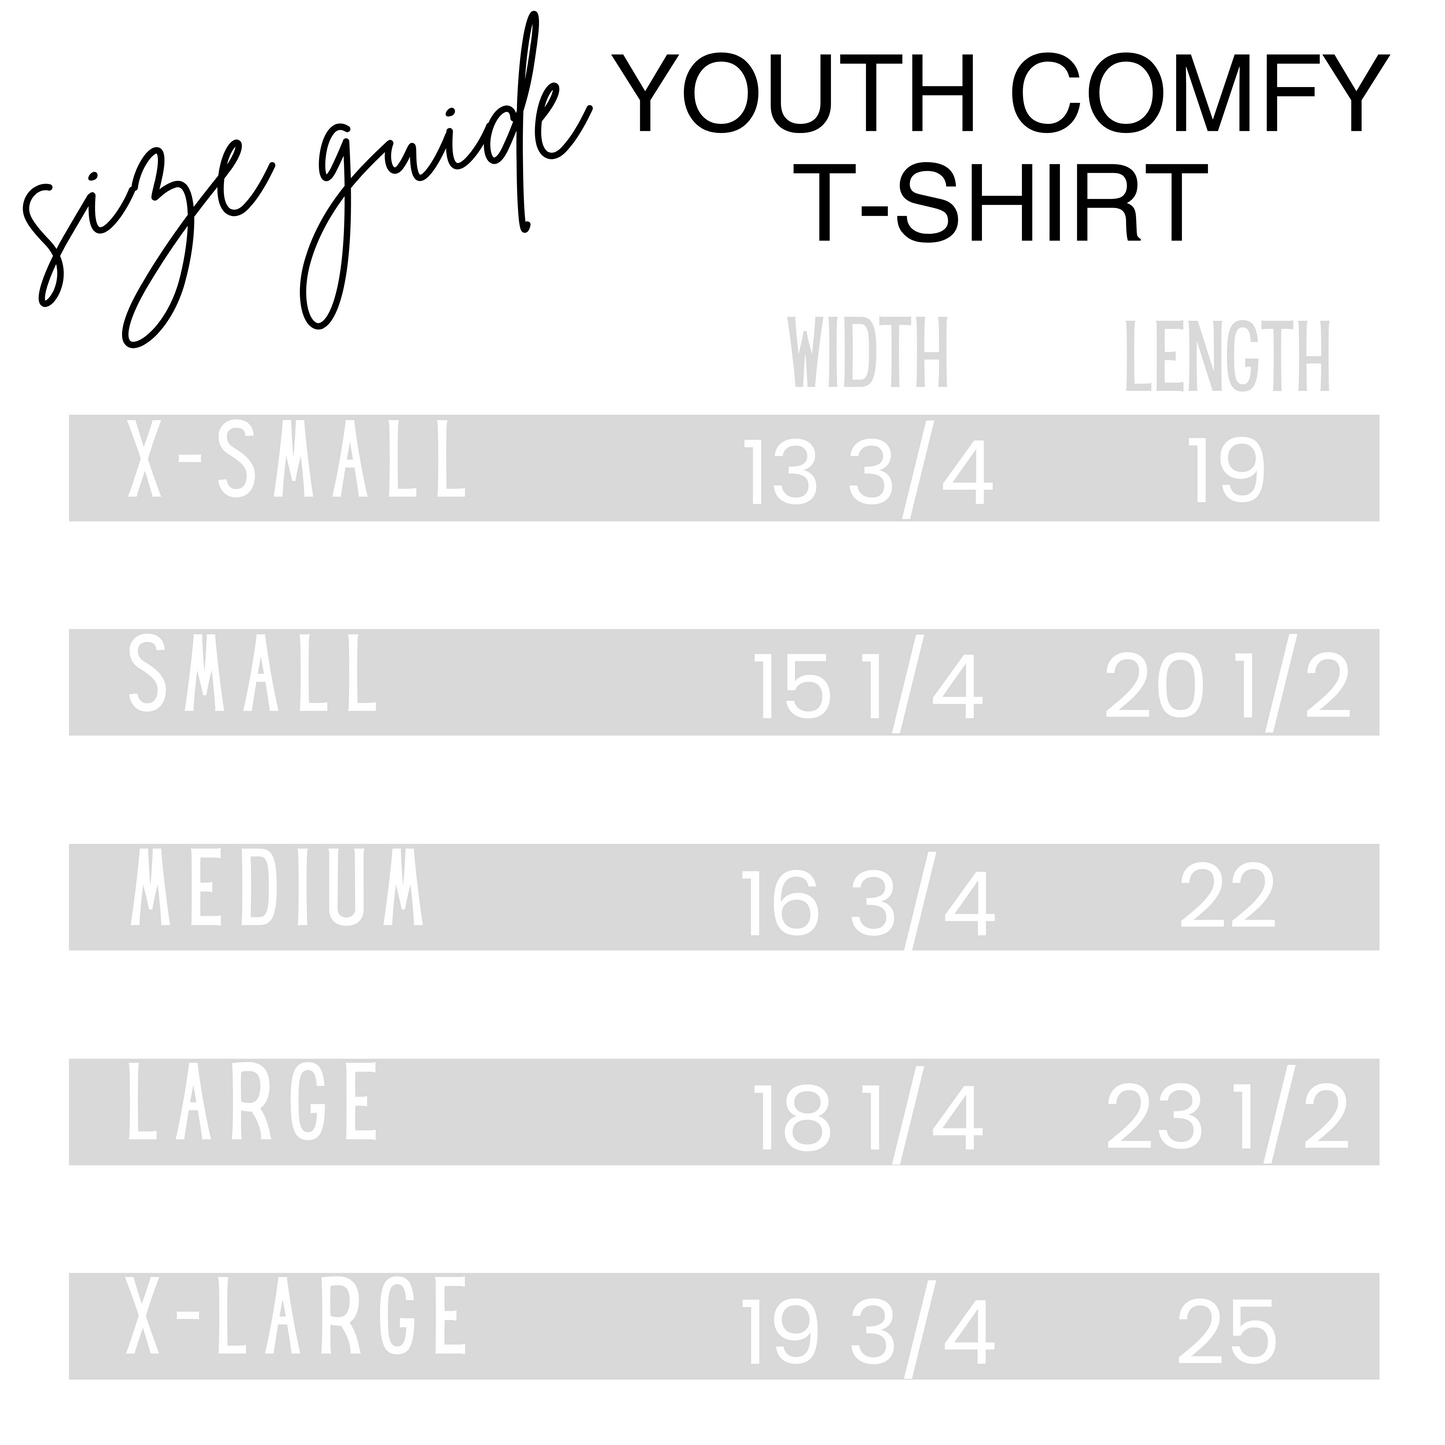 Catcher's Mitt- Youth Comfy T-Shirt